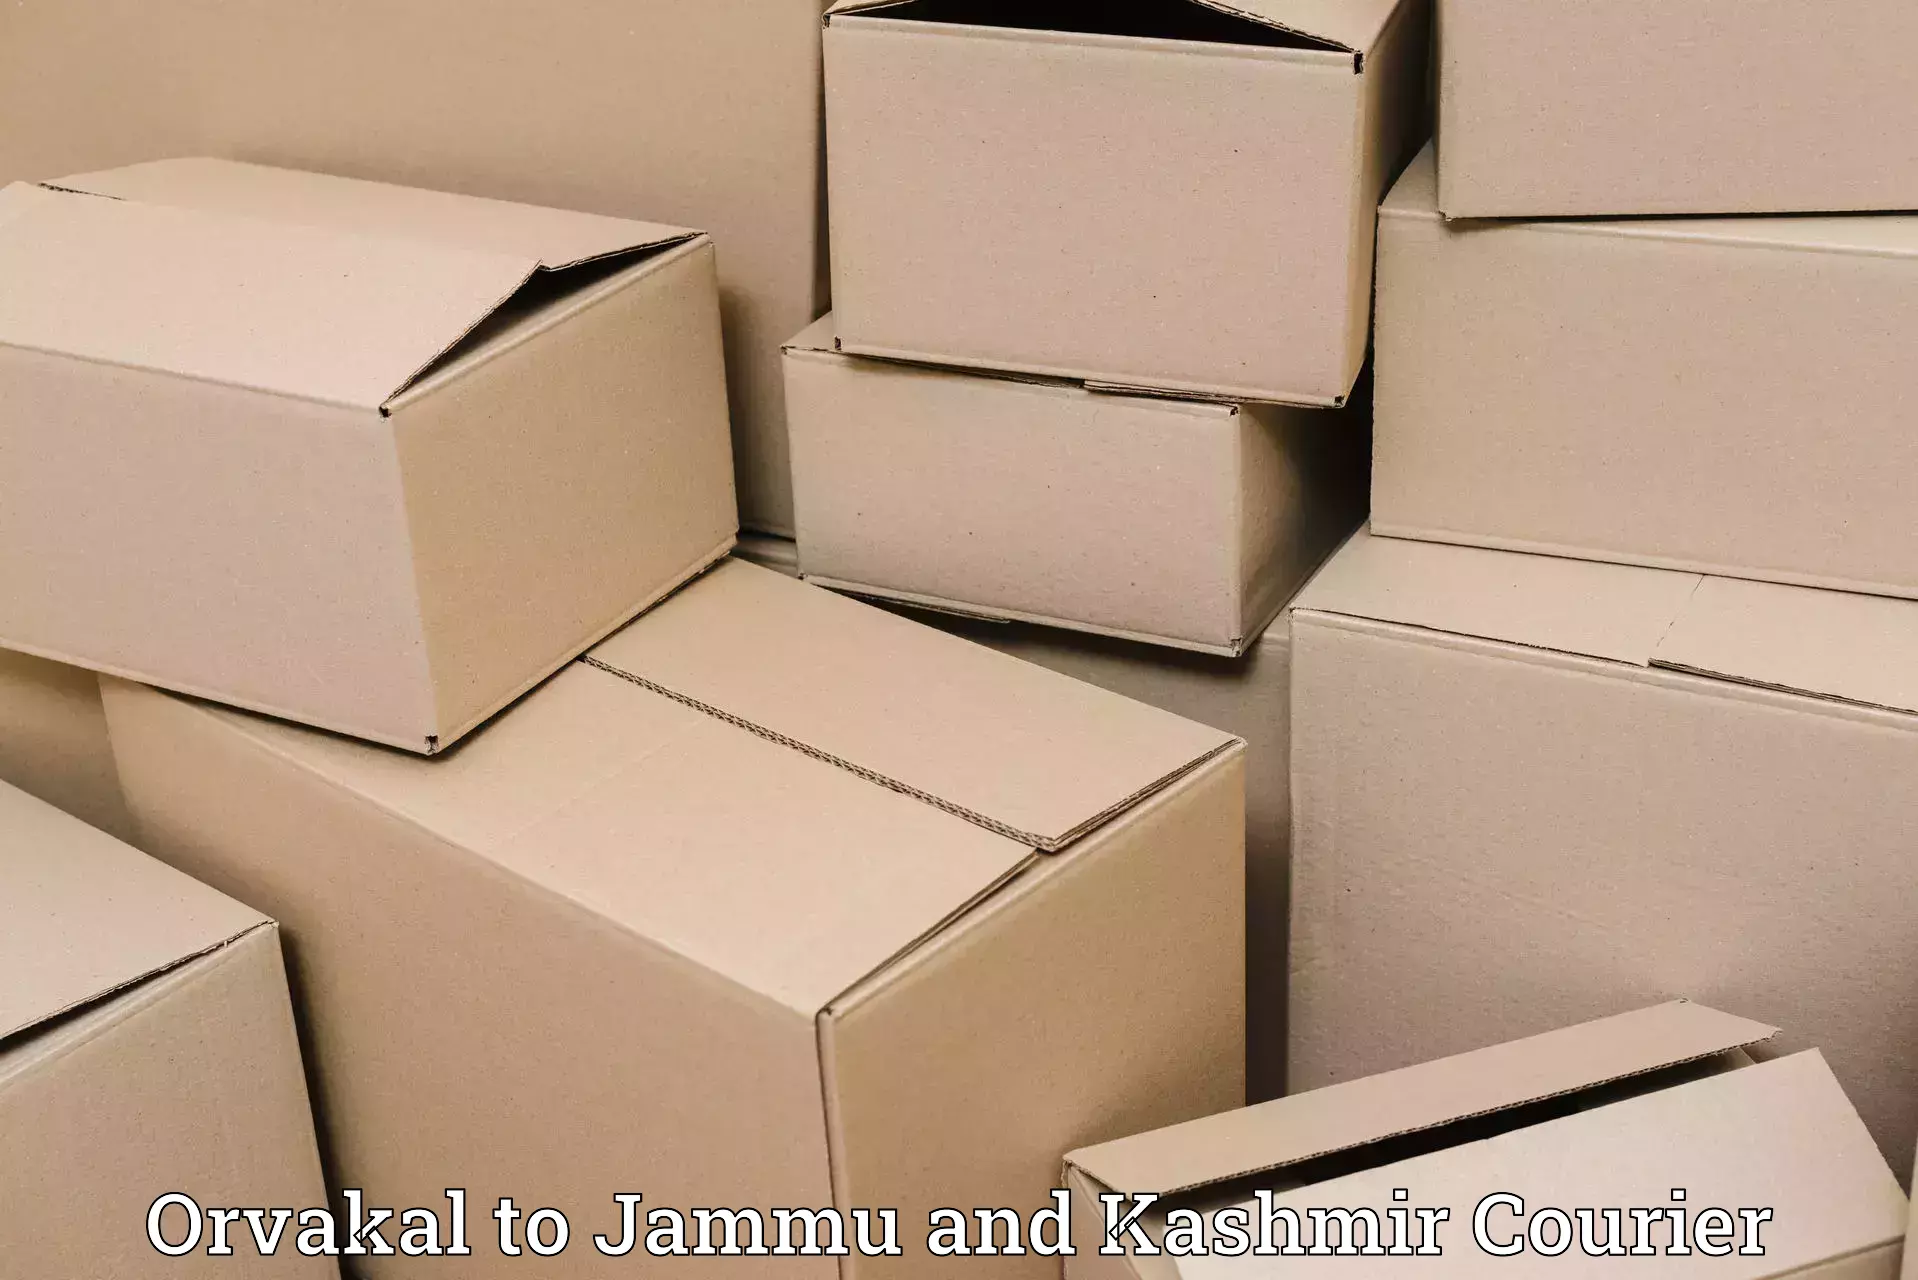 Cash on delivery service Orvakal to Kishtwar